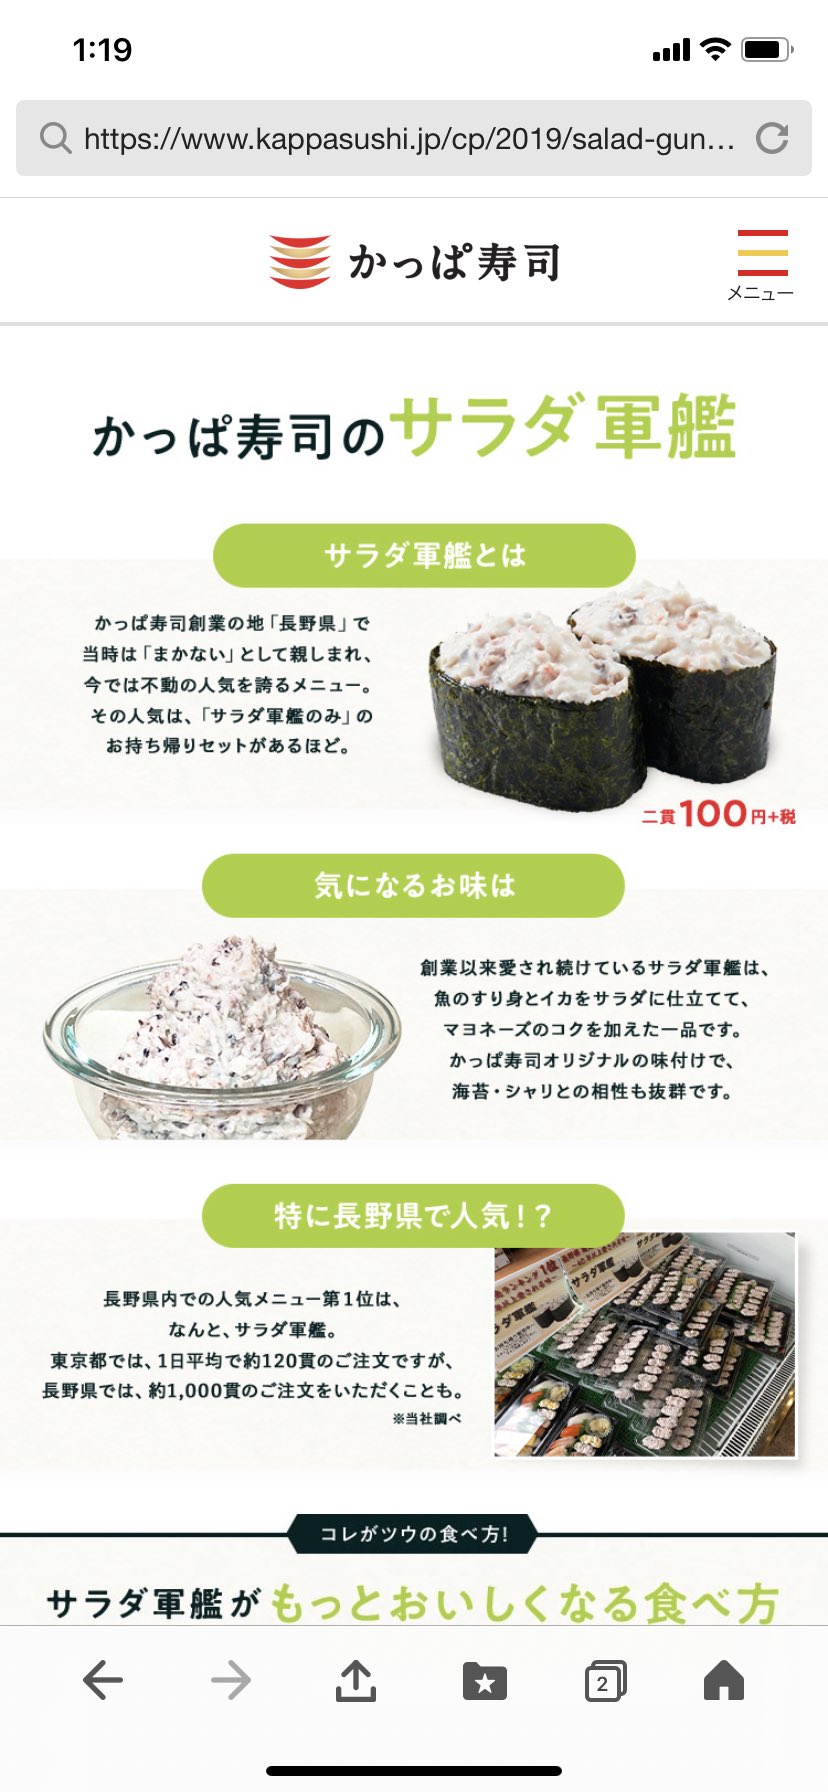 트위터의 Aoi Esk 님 かっぱ寿司の サラダ軍艦が 今まで食べた回転寿司 の中で最強